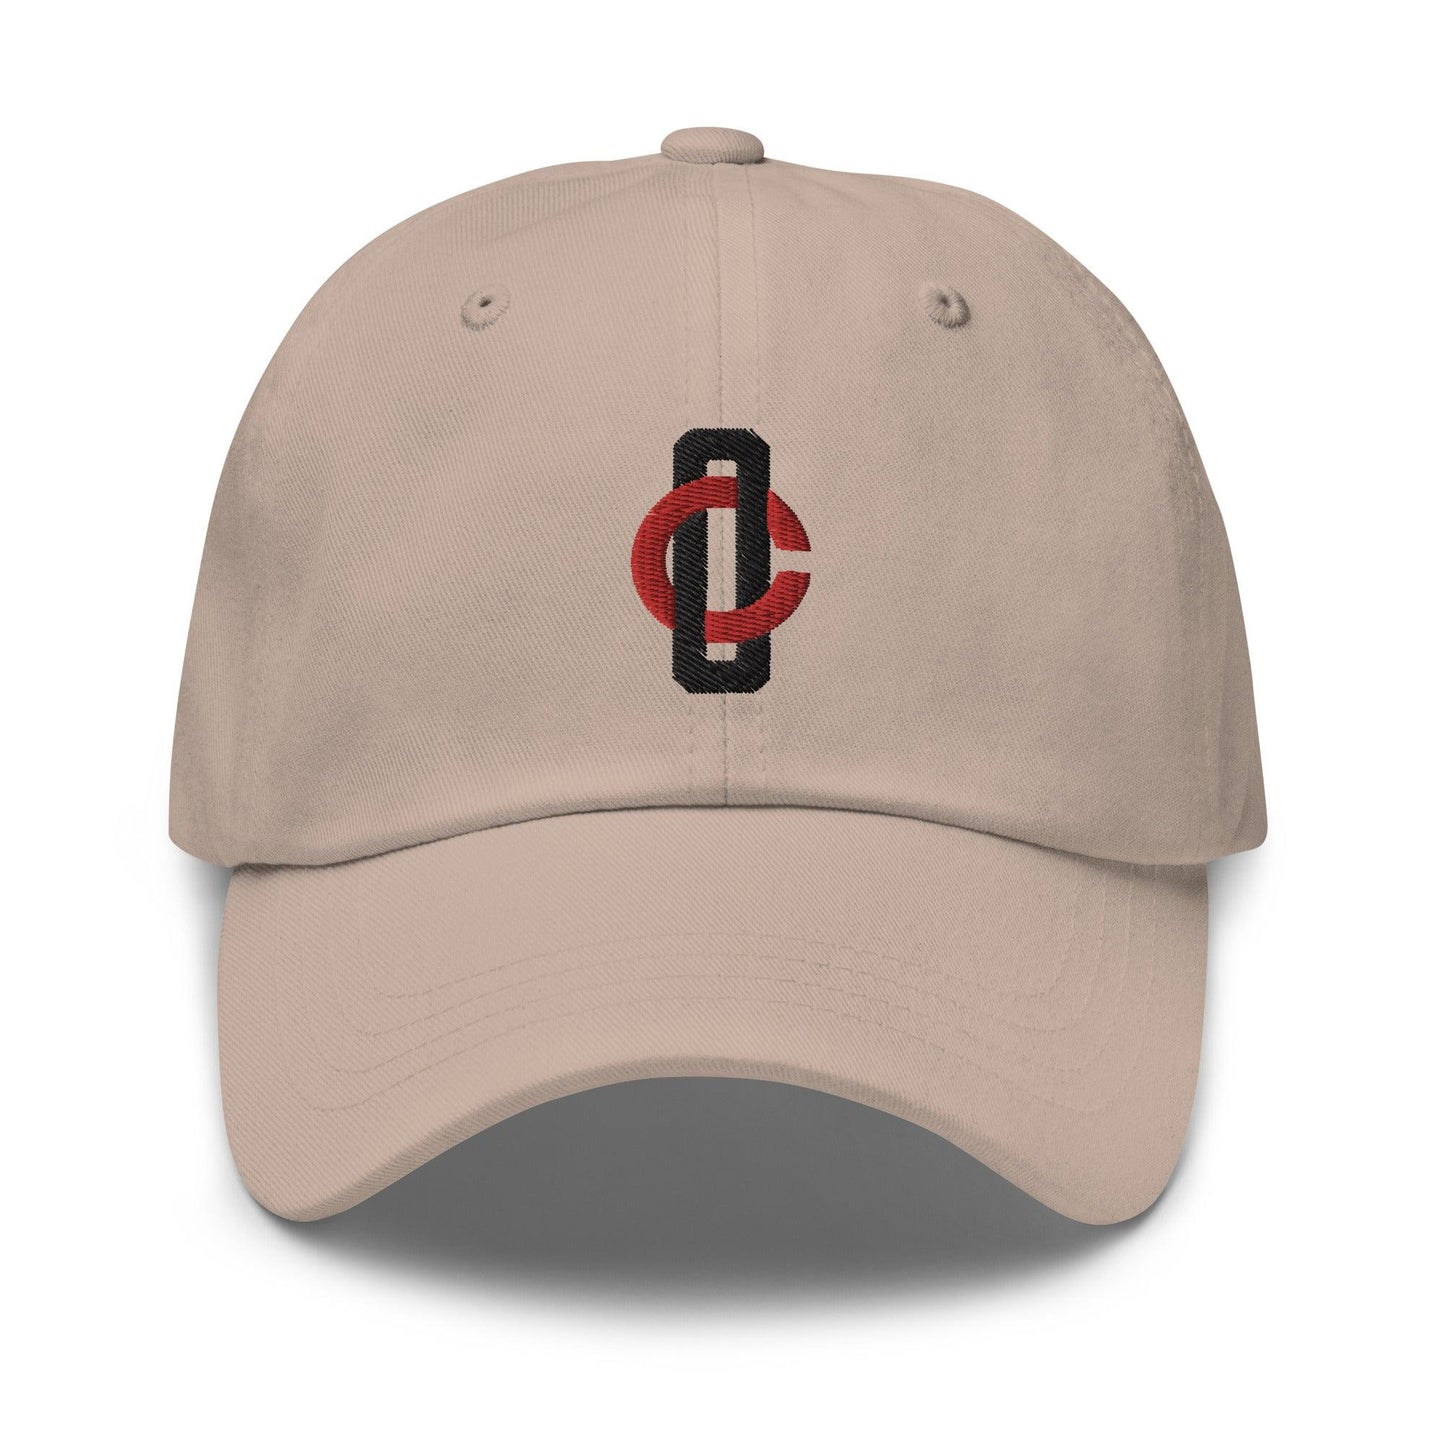 Chris Okey "Essential" hat - Fan Arch